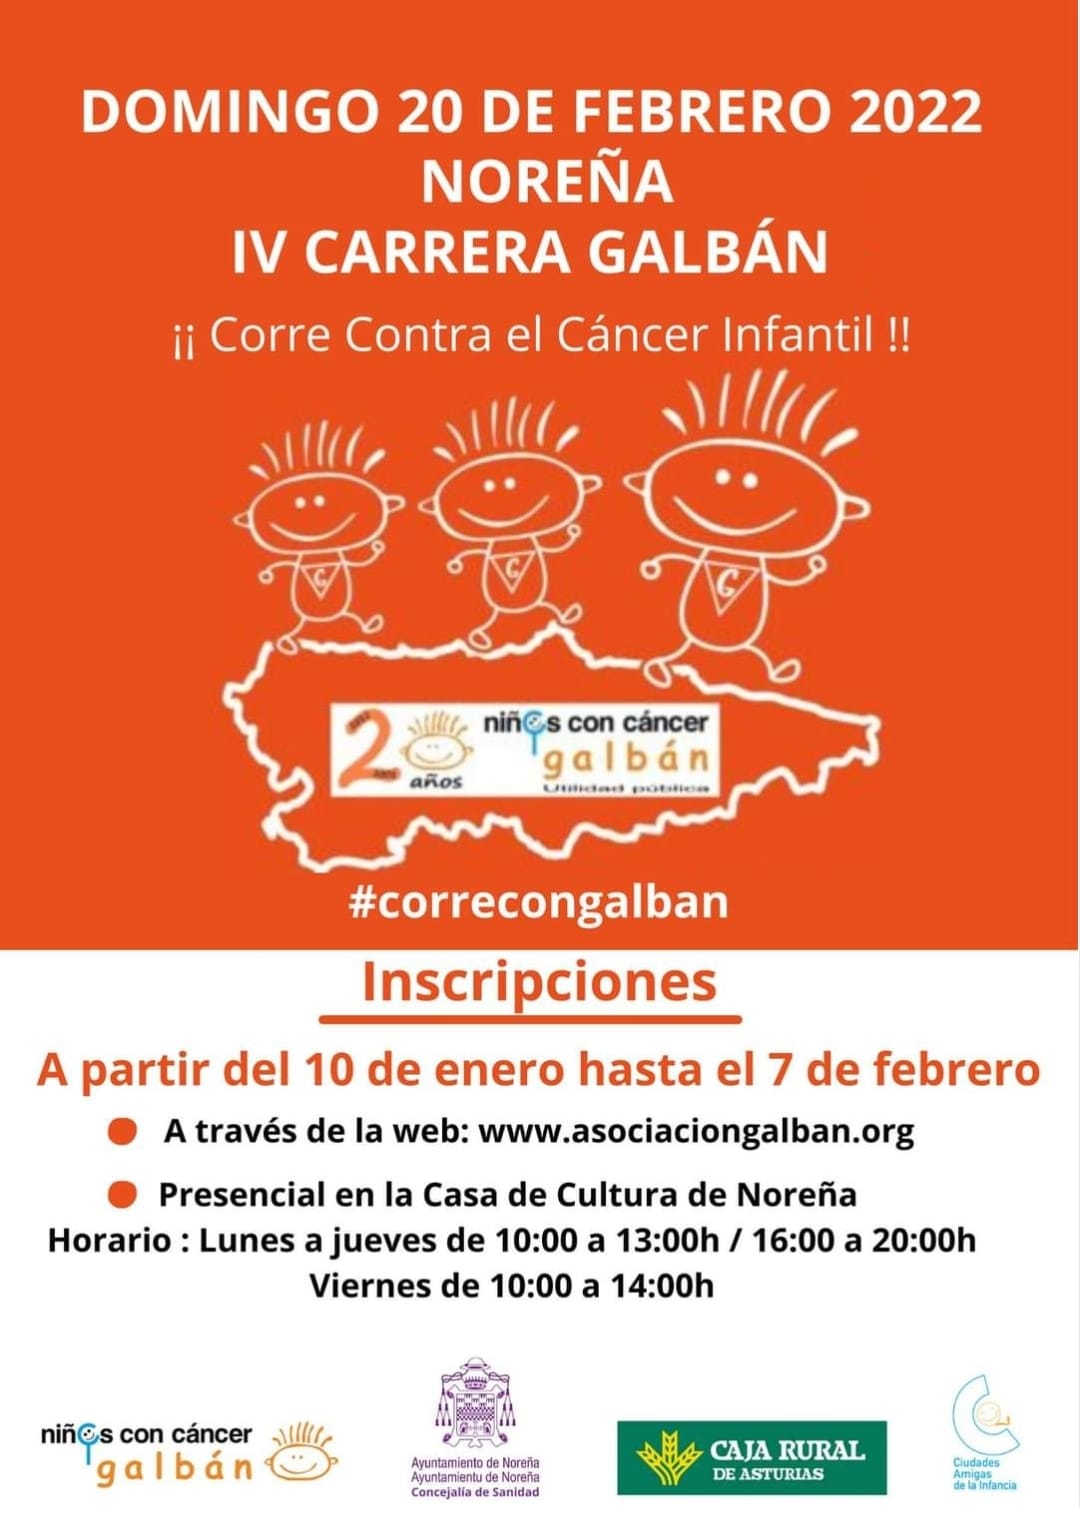 CARRERA GALBÁN CONTRA EL CÁNCER INFANTIL